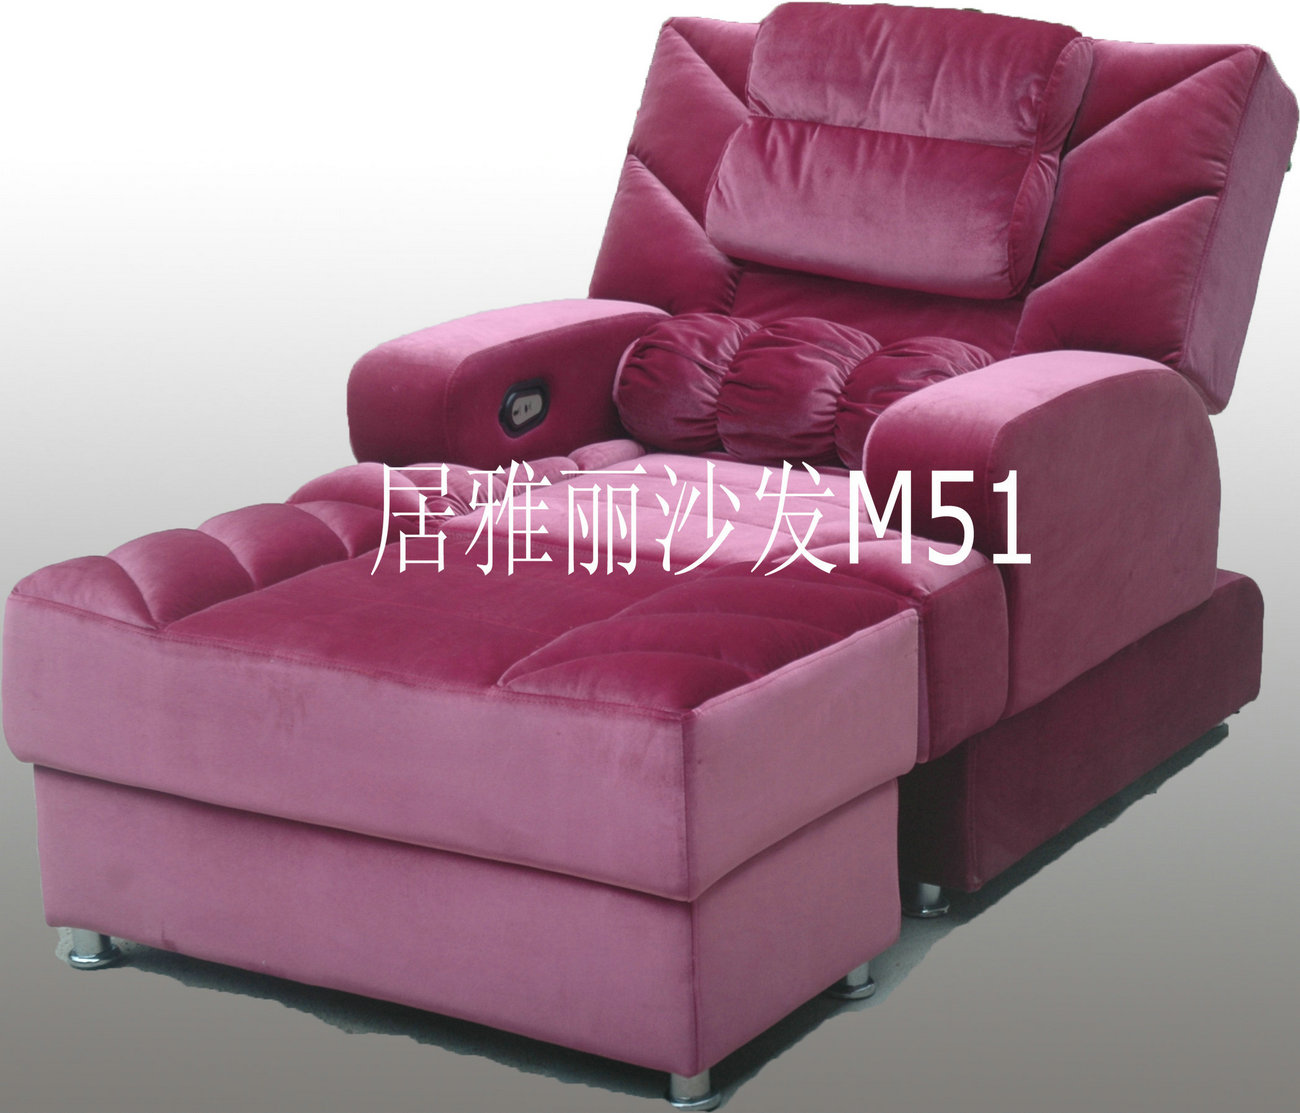 广州沐足沙发桑拿沙发足疗沙发美甲沙发质量问题